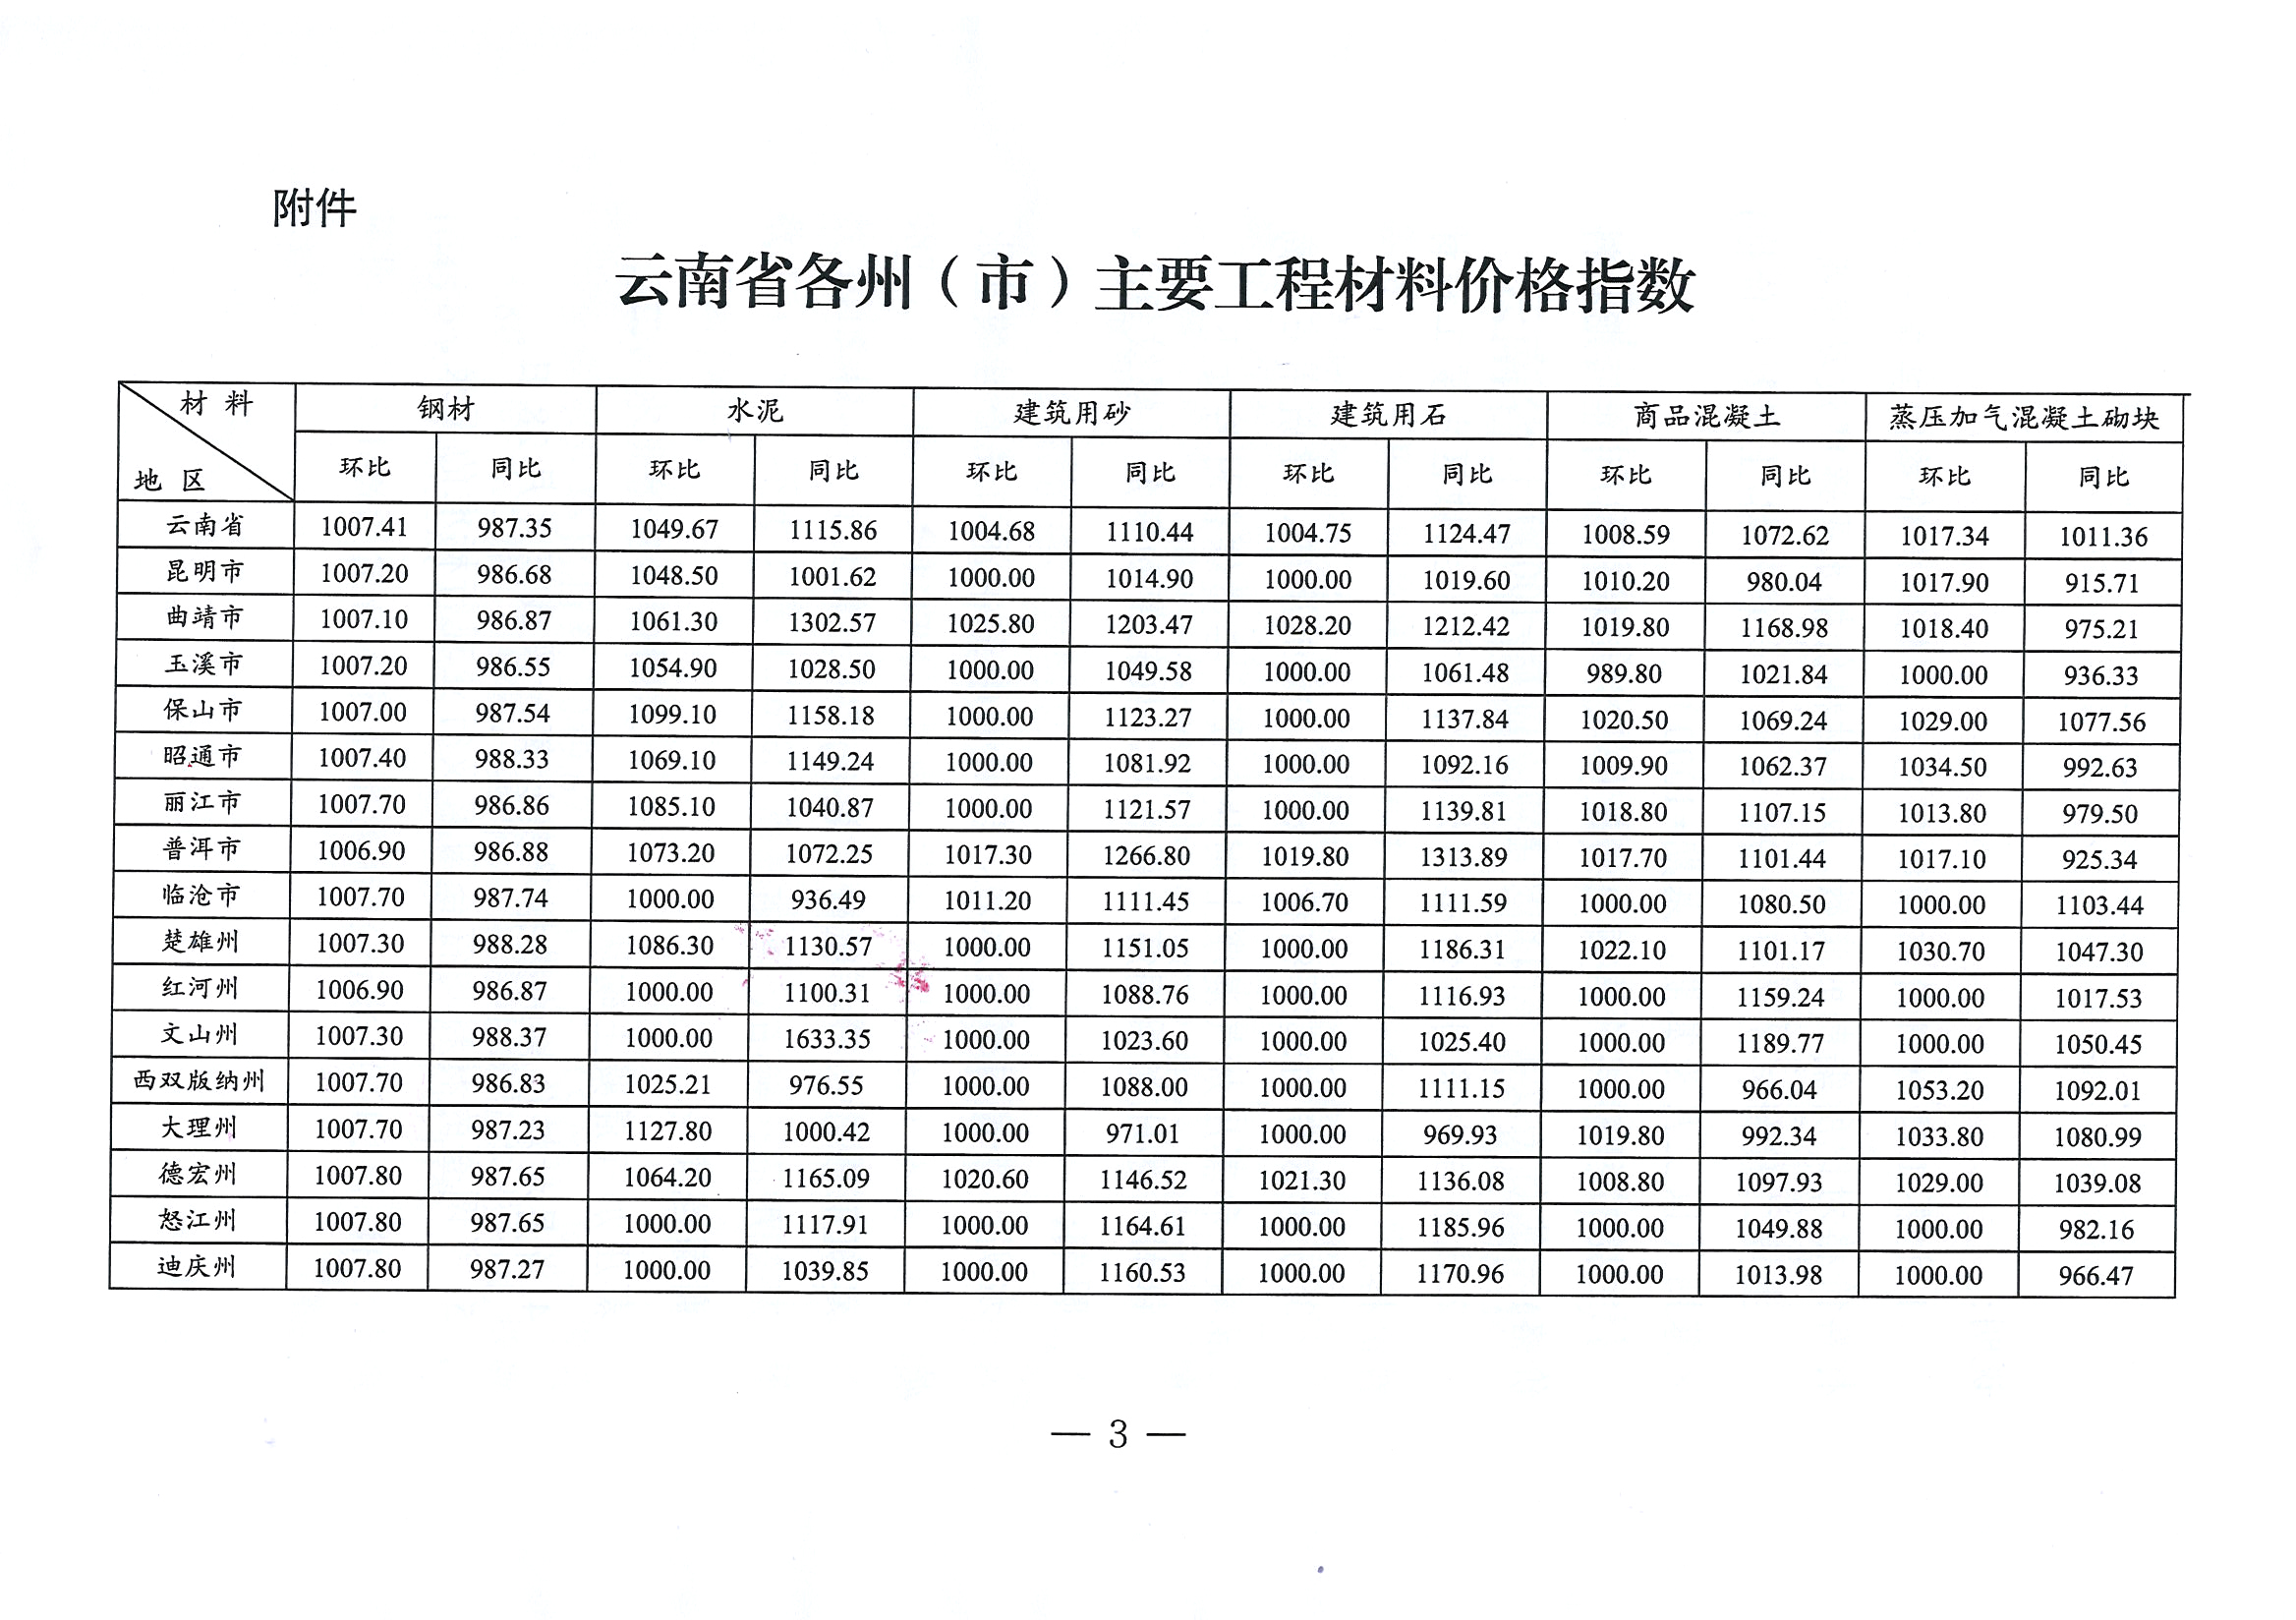 关于2022年4月云南省主要工程材料价格波动情况的通报